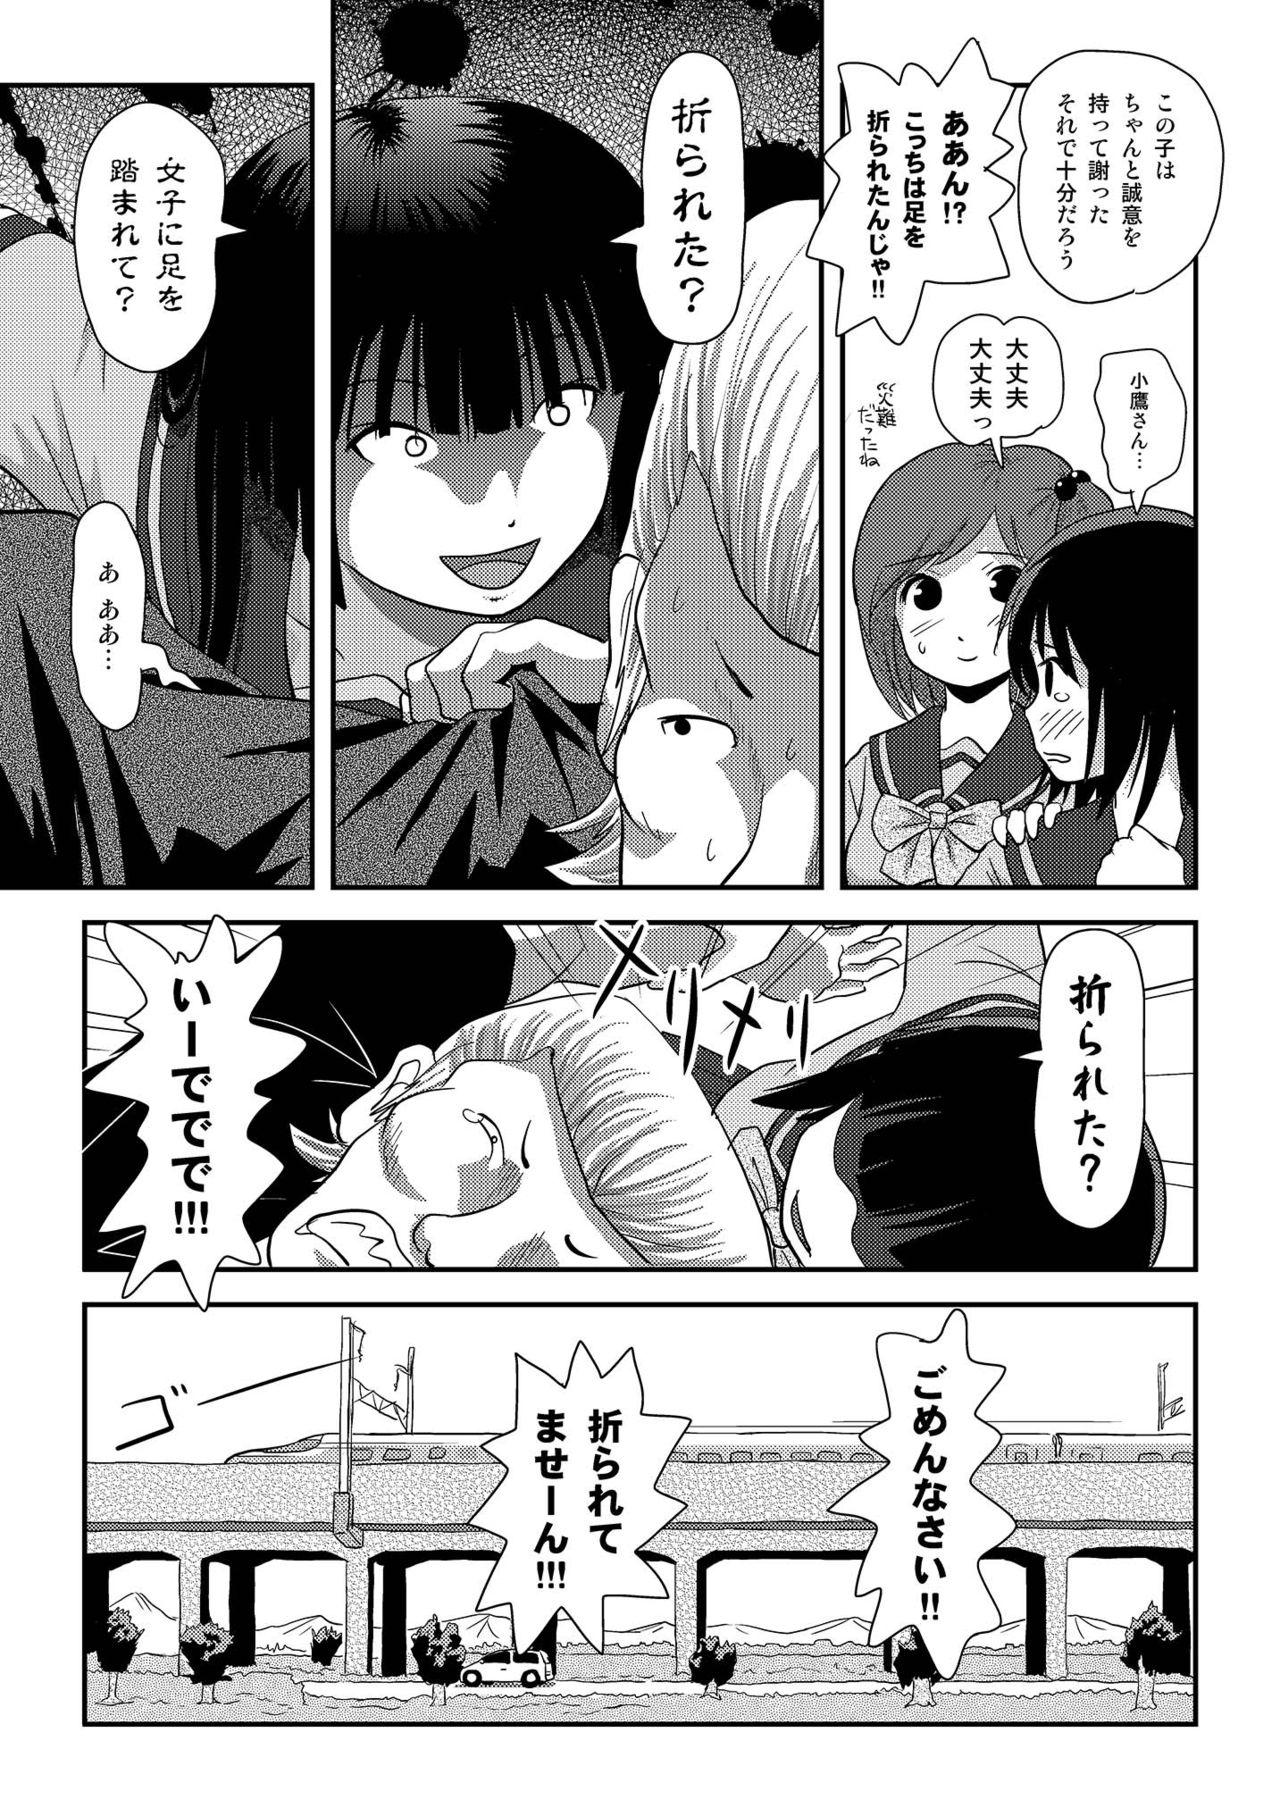 Doggystyle Sakura Kotaka no Roshutsubiyori 6 - Original Big Dicks - Page 9